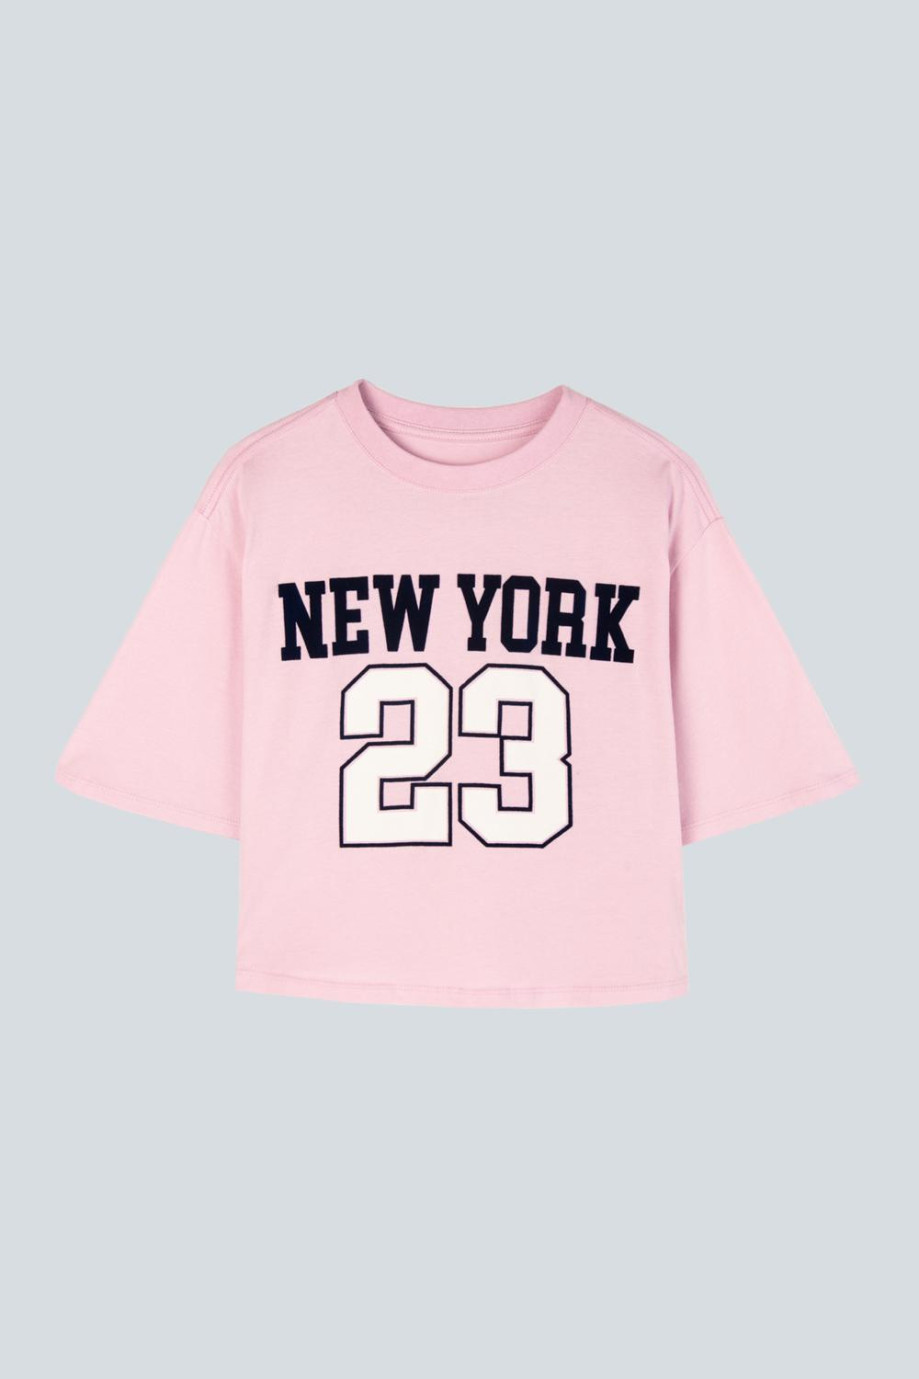 Camiseta crop top oversize para mujer en color rosado estampada en frente estilo college